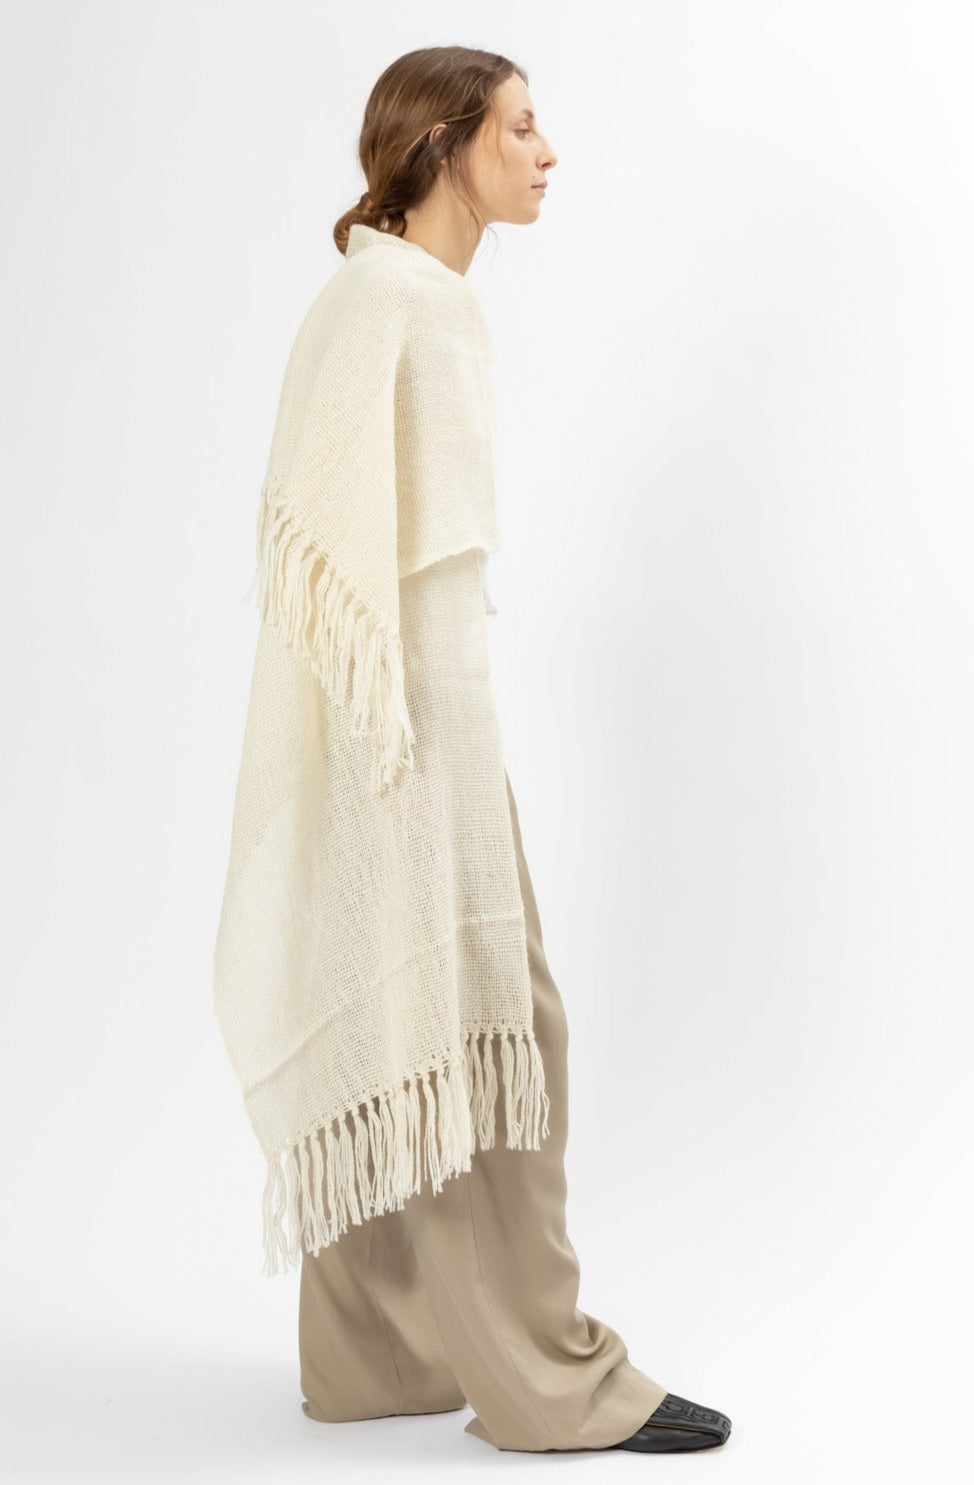 Hand Matters. White llama wool shawl